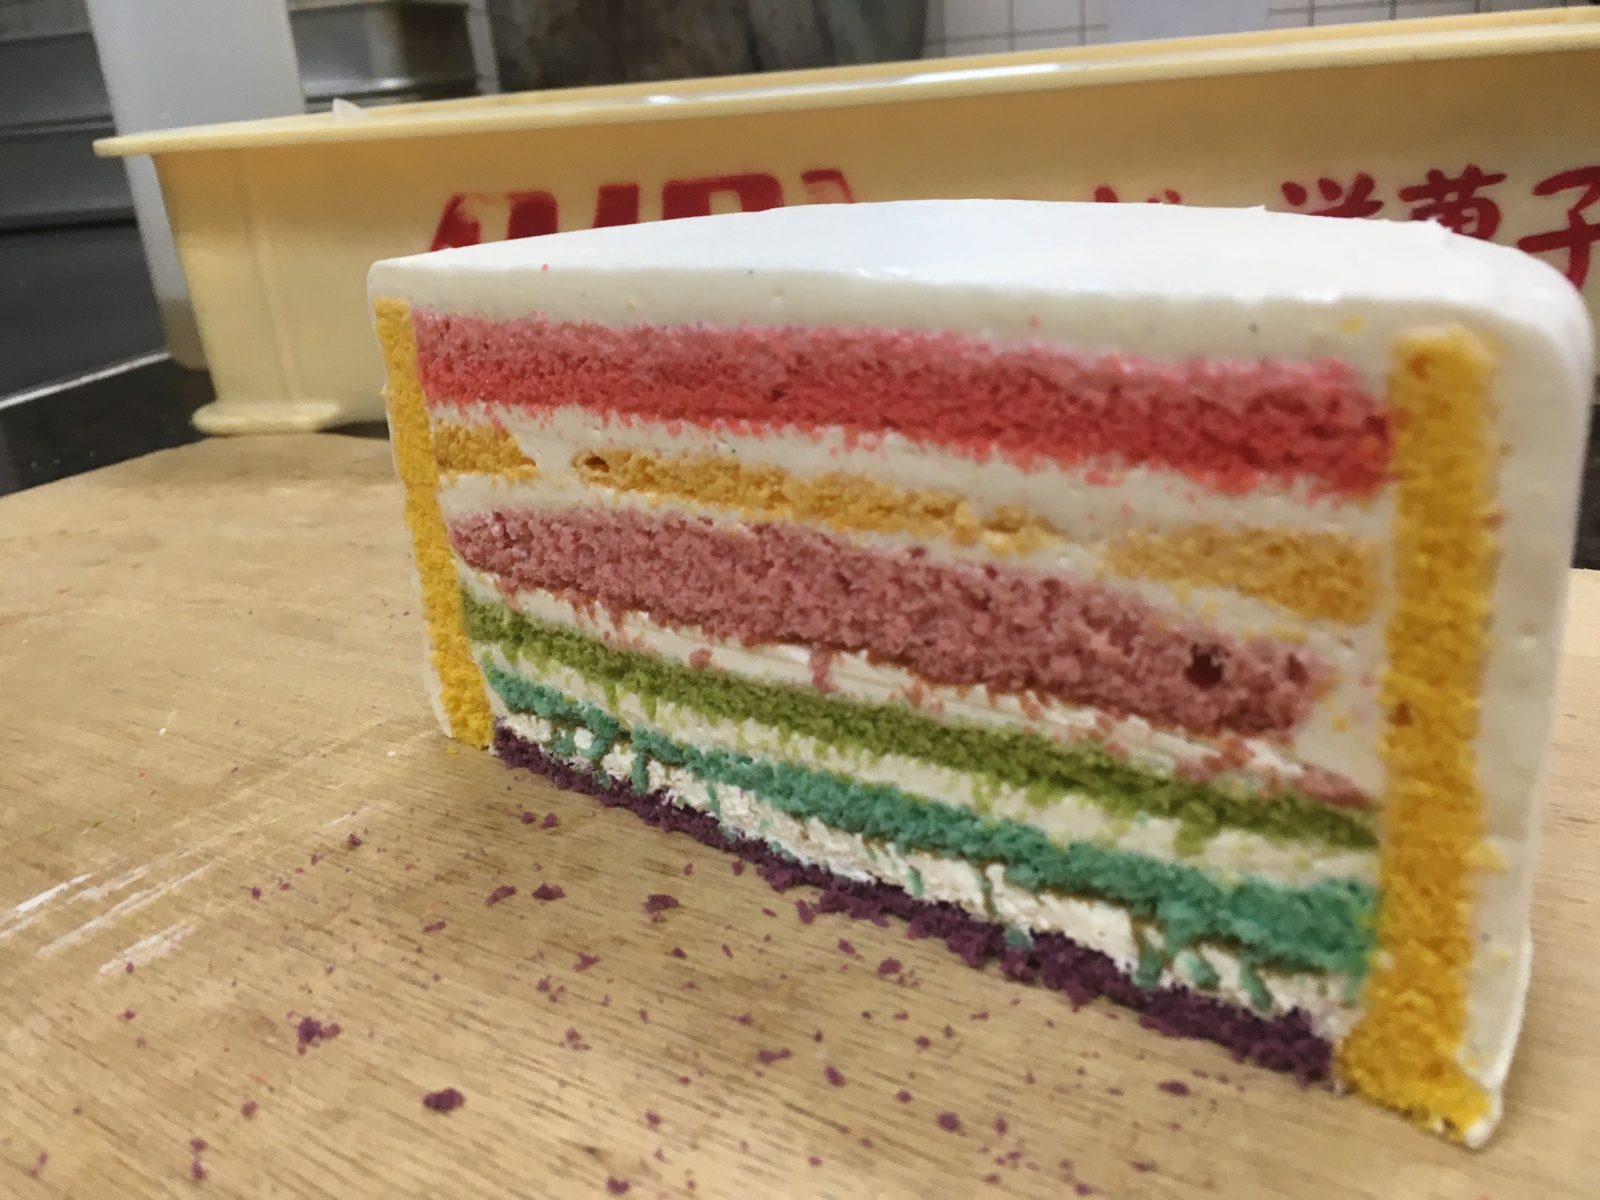 ６号サイズ 1８ｃｍ 虹色ケーキでスポンジが全て違う味です今回見た目にもインスタ映えするようにしました マンゴースポンジがサイドに張りつけてあります スペシャルレインボーケーキ6号サイズ 誕生日ケーキ お誕生日ケーキ バースデー ケーキ ホールケーキ ホール 激安